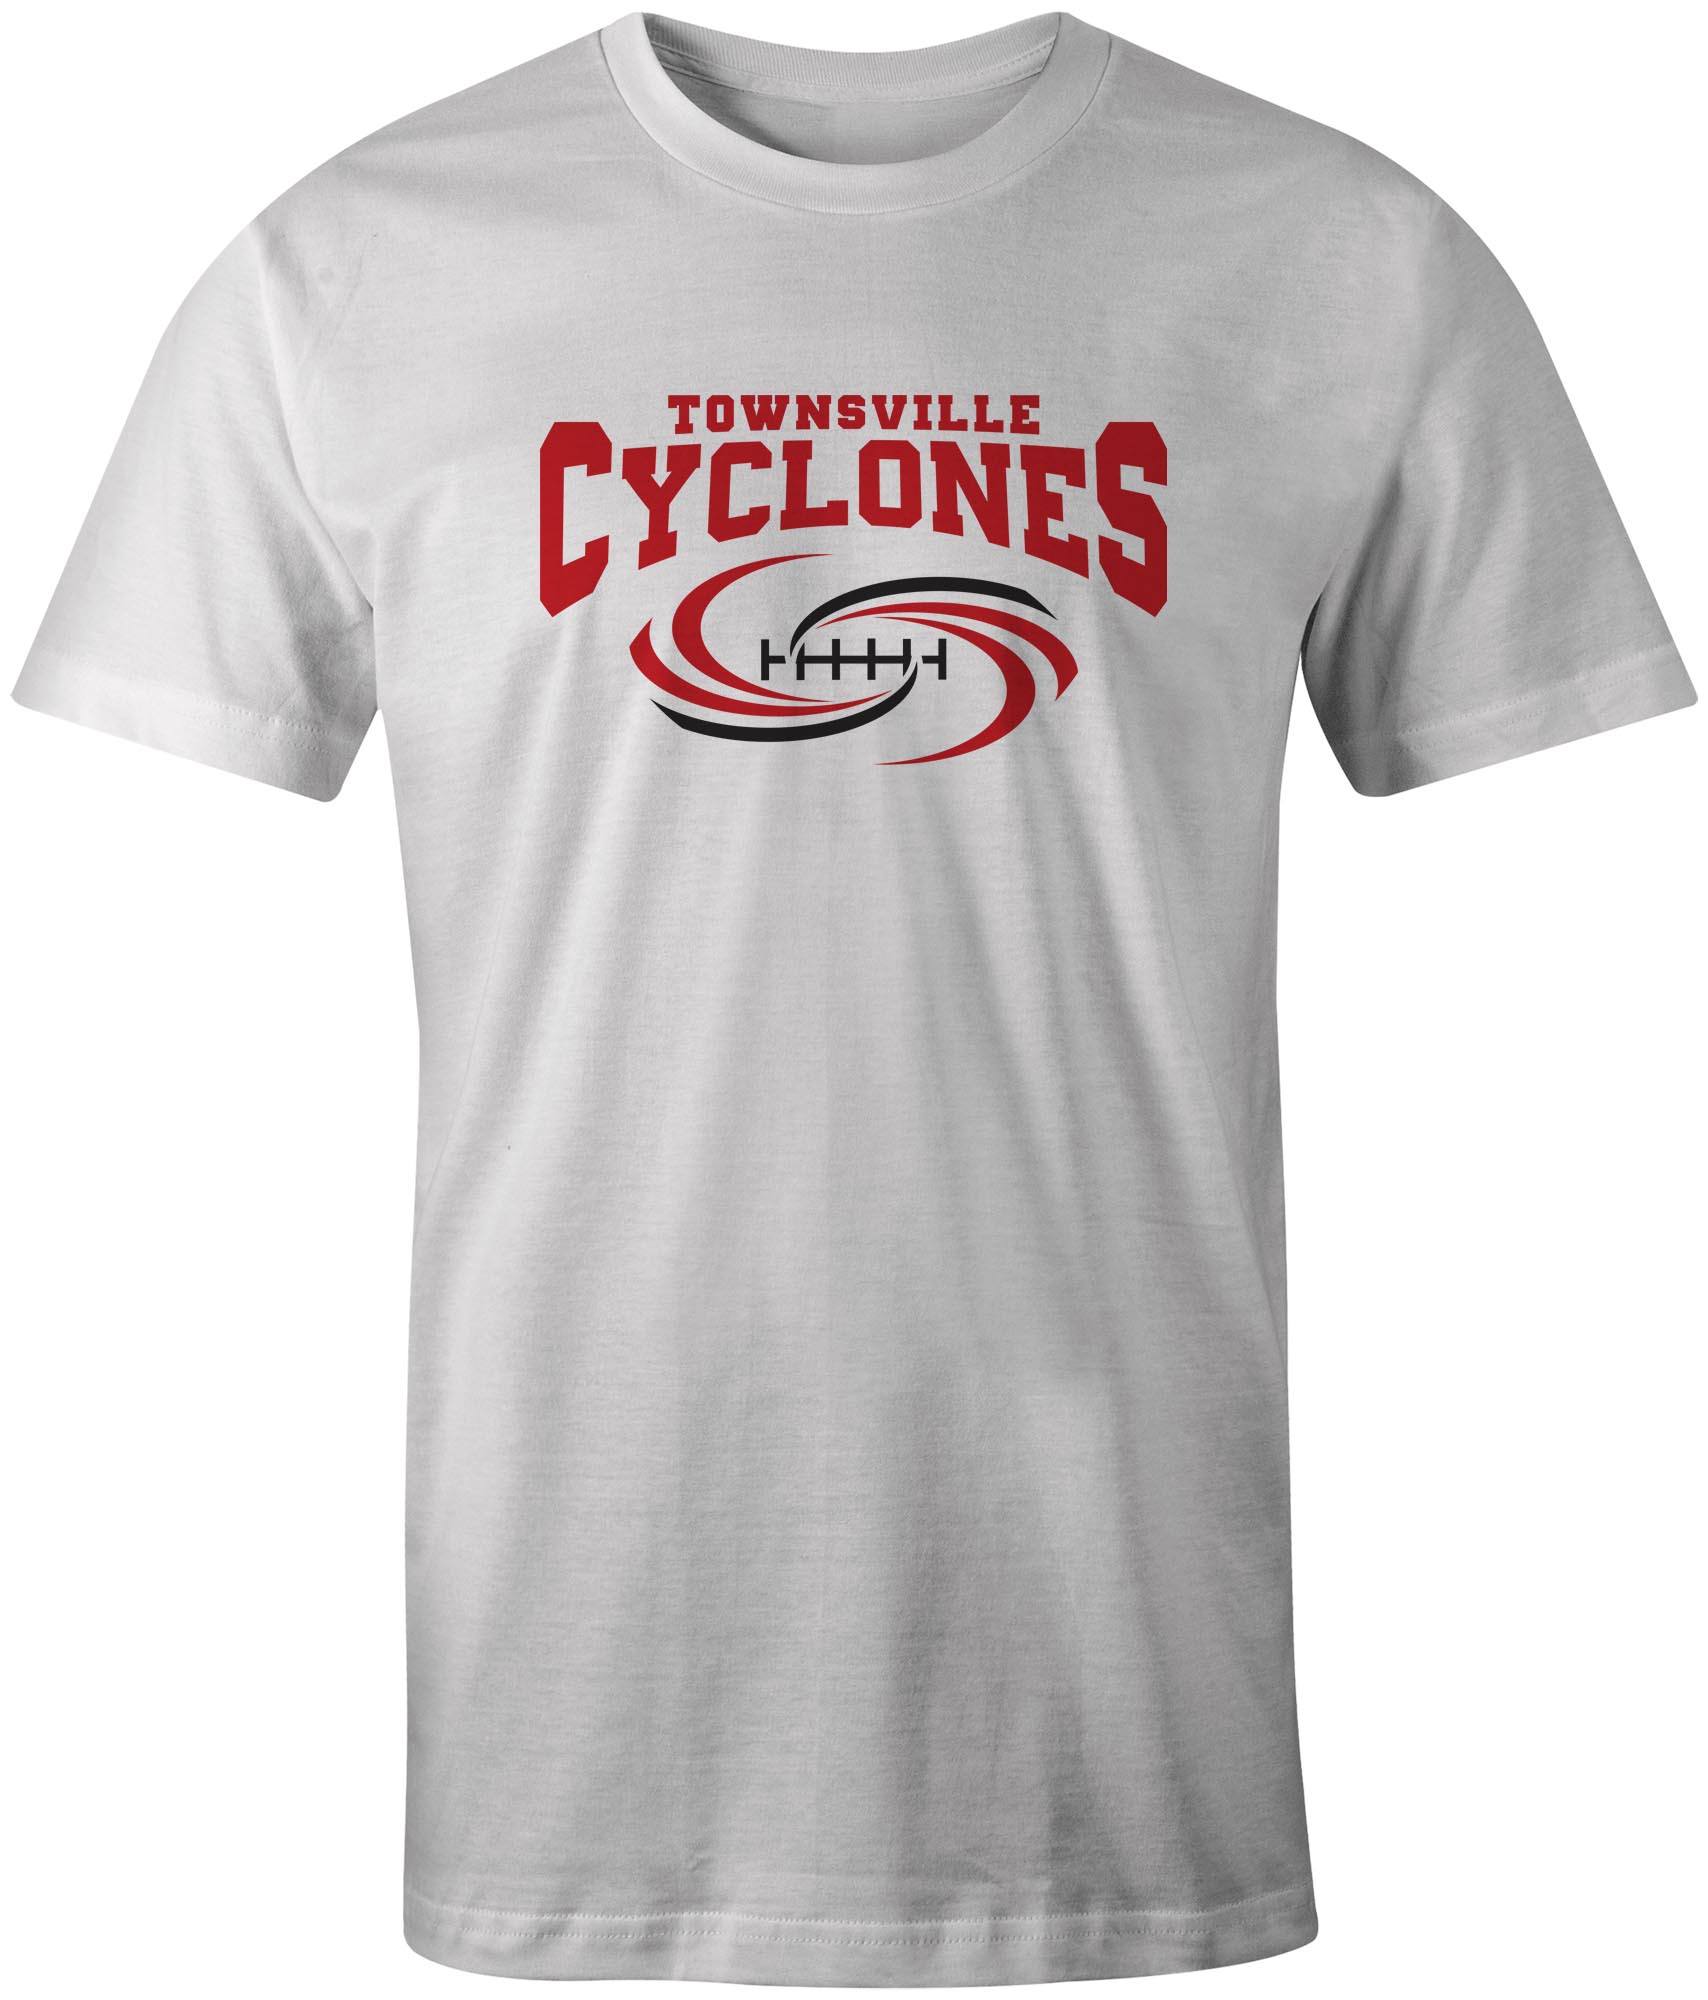 Townsville Cyclones Official Team Logo T-Shirt